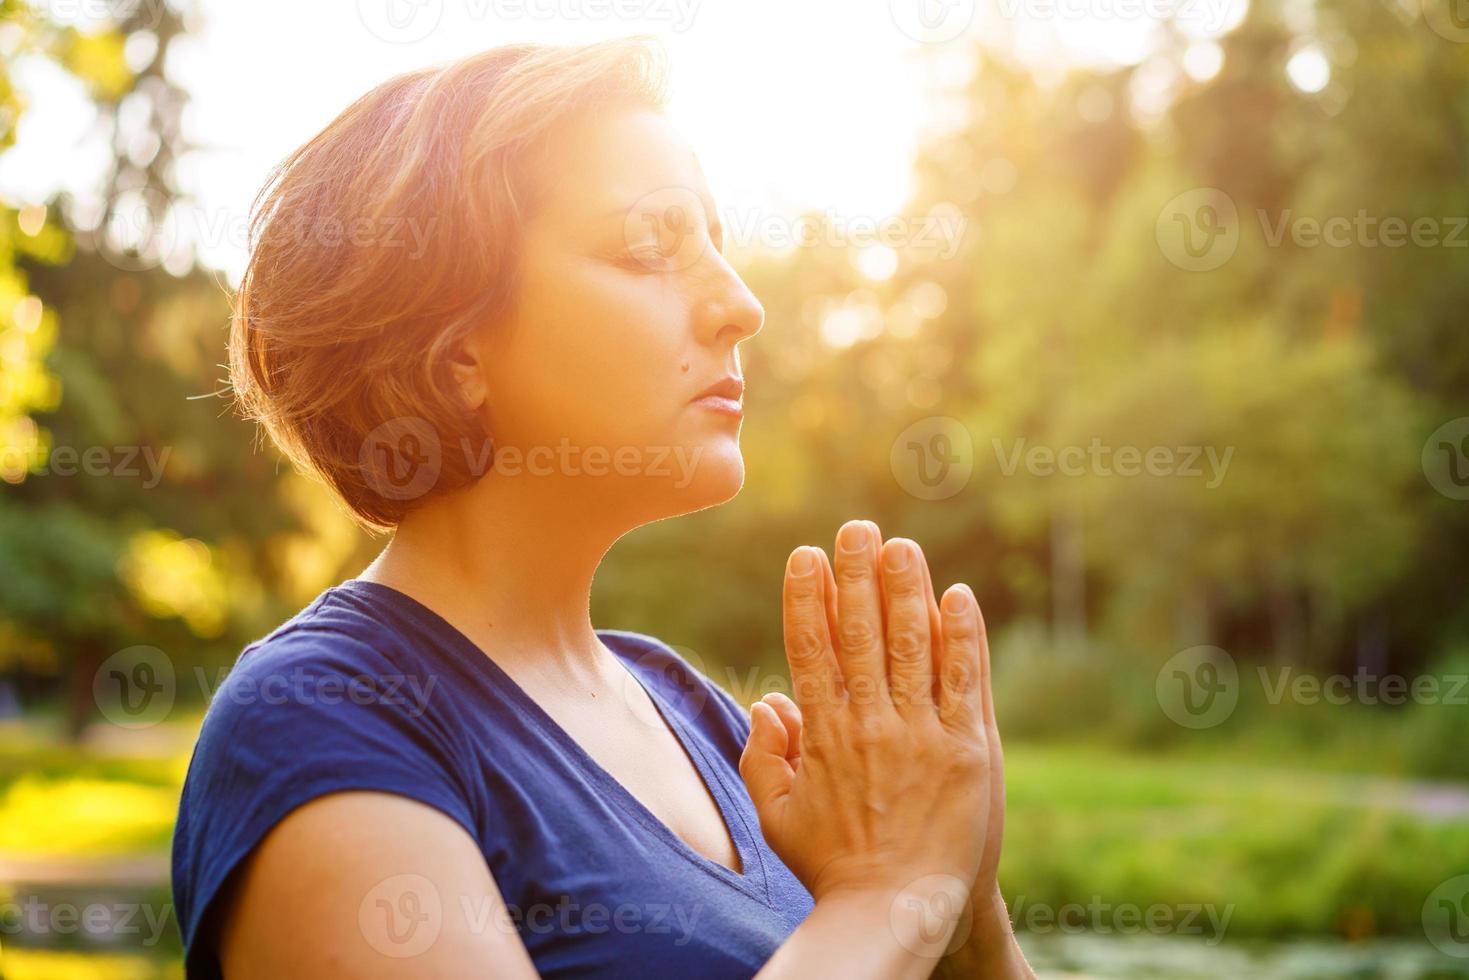 vrouw staat met gevouwen handpalmen naar elkaar, tegen de achtergrond van de natuur foto